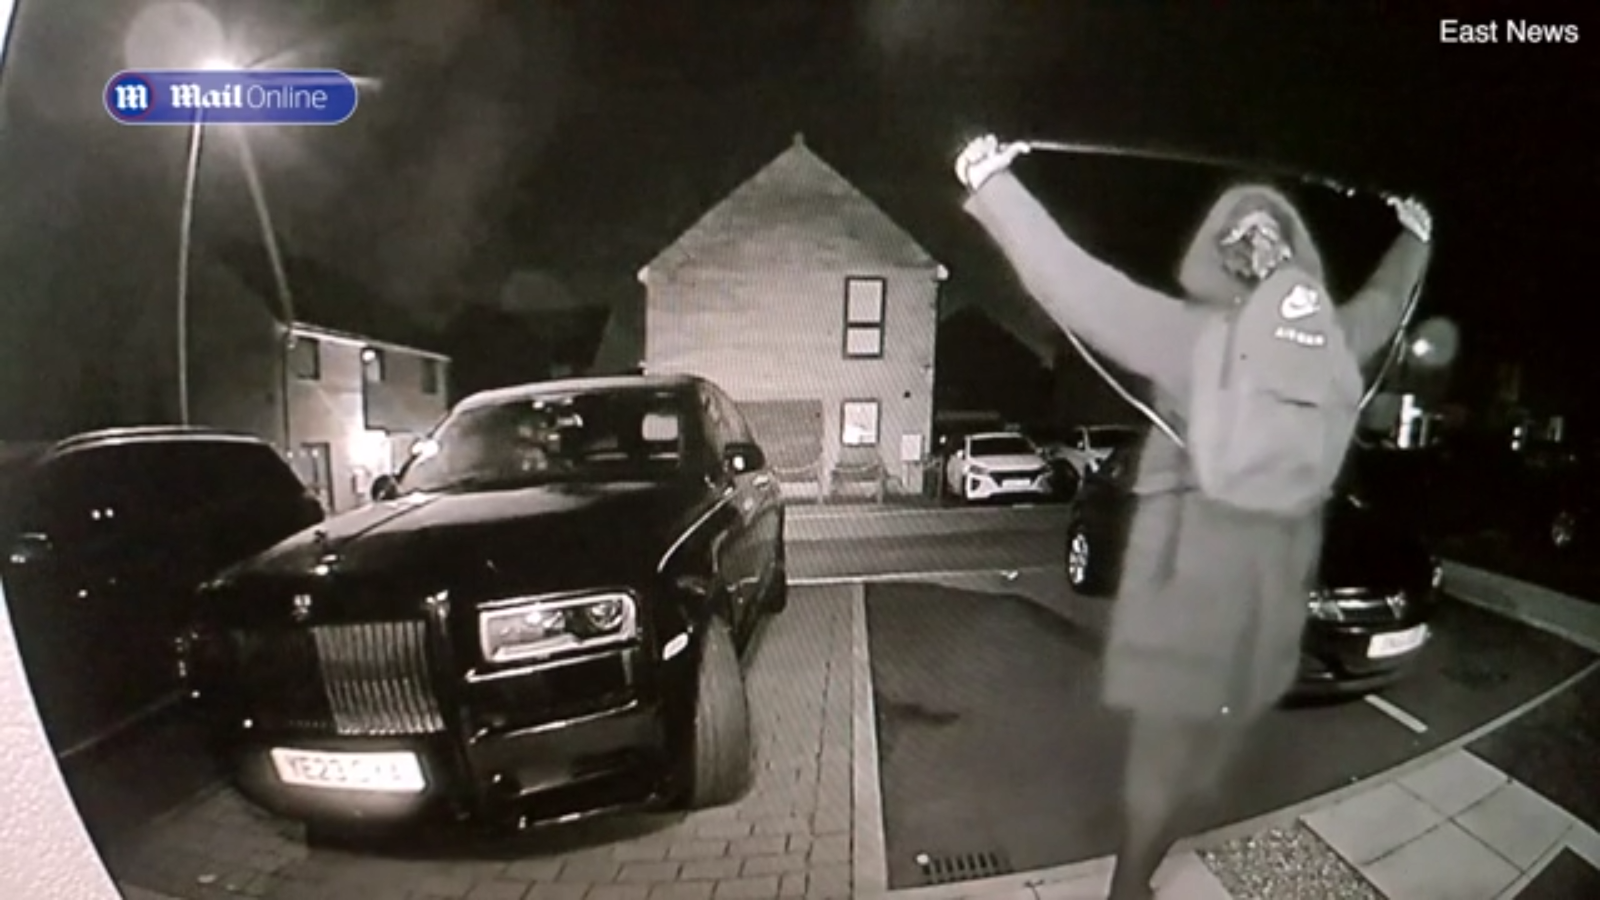 Camera ghi cảnh kẻ lạ mặt giơ tay lên trời như làm phép, lát sau lấy trộm 1 chiếc Rolls-Royce - Ảnh 3.